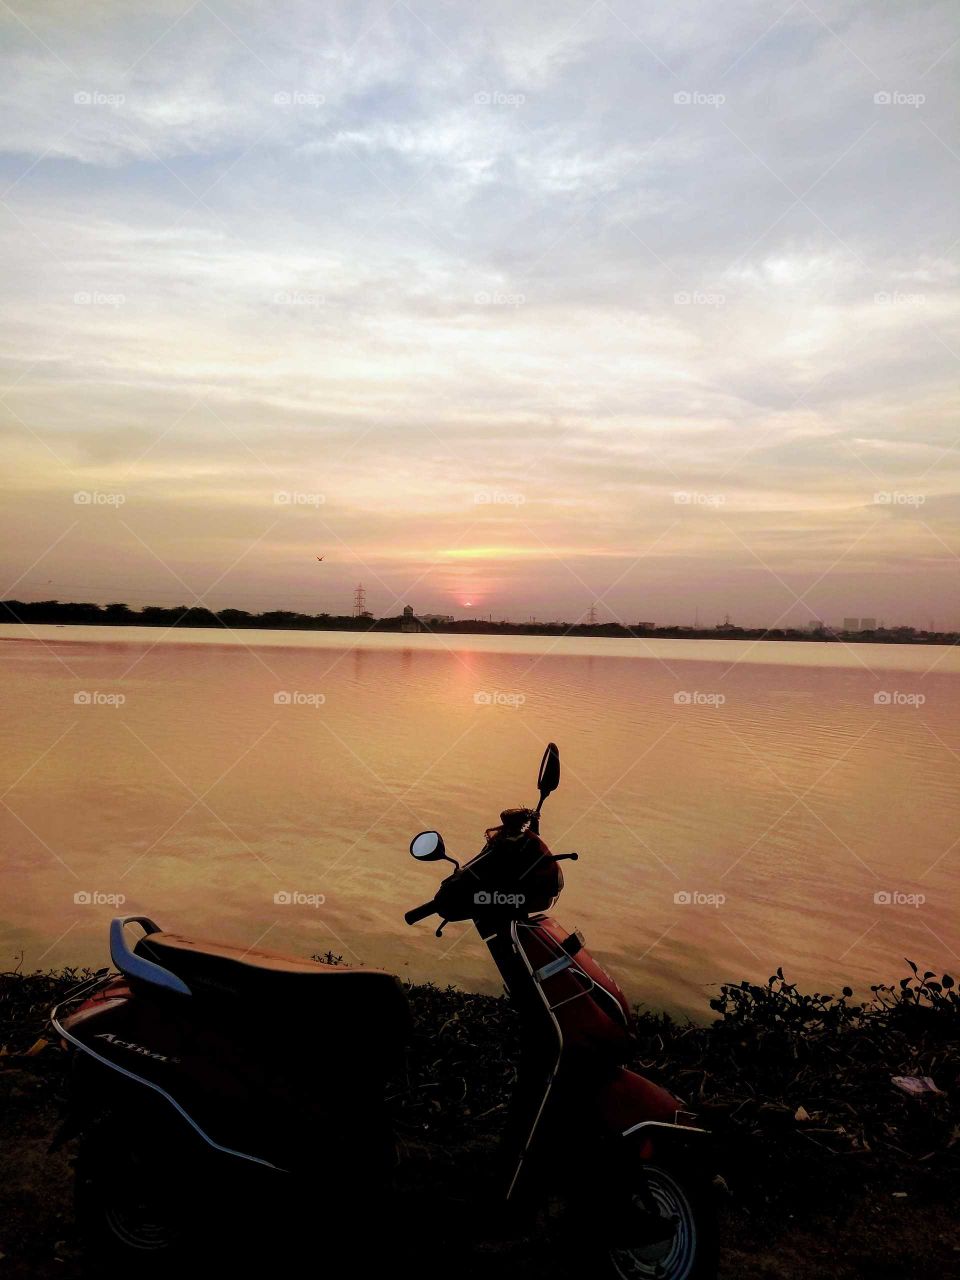 Sunset near lake